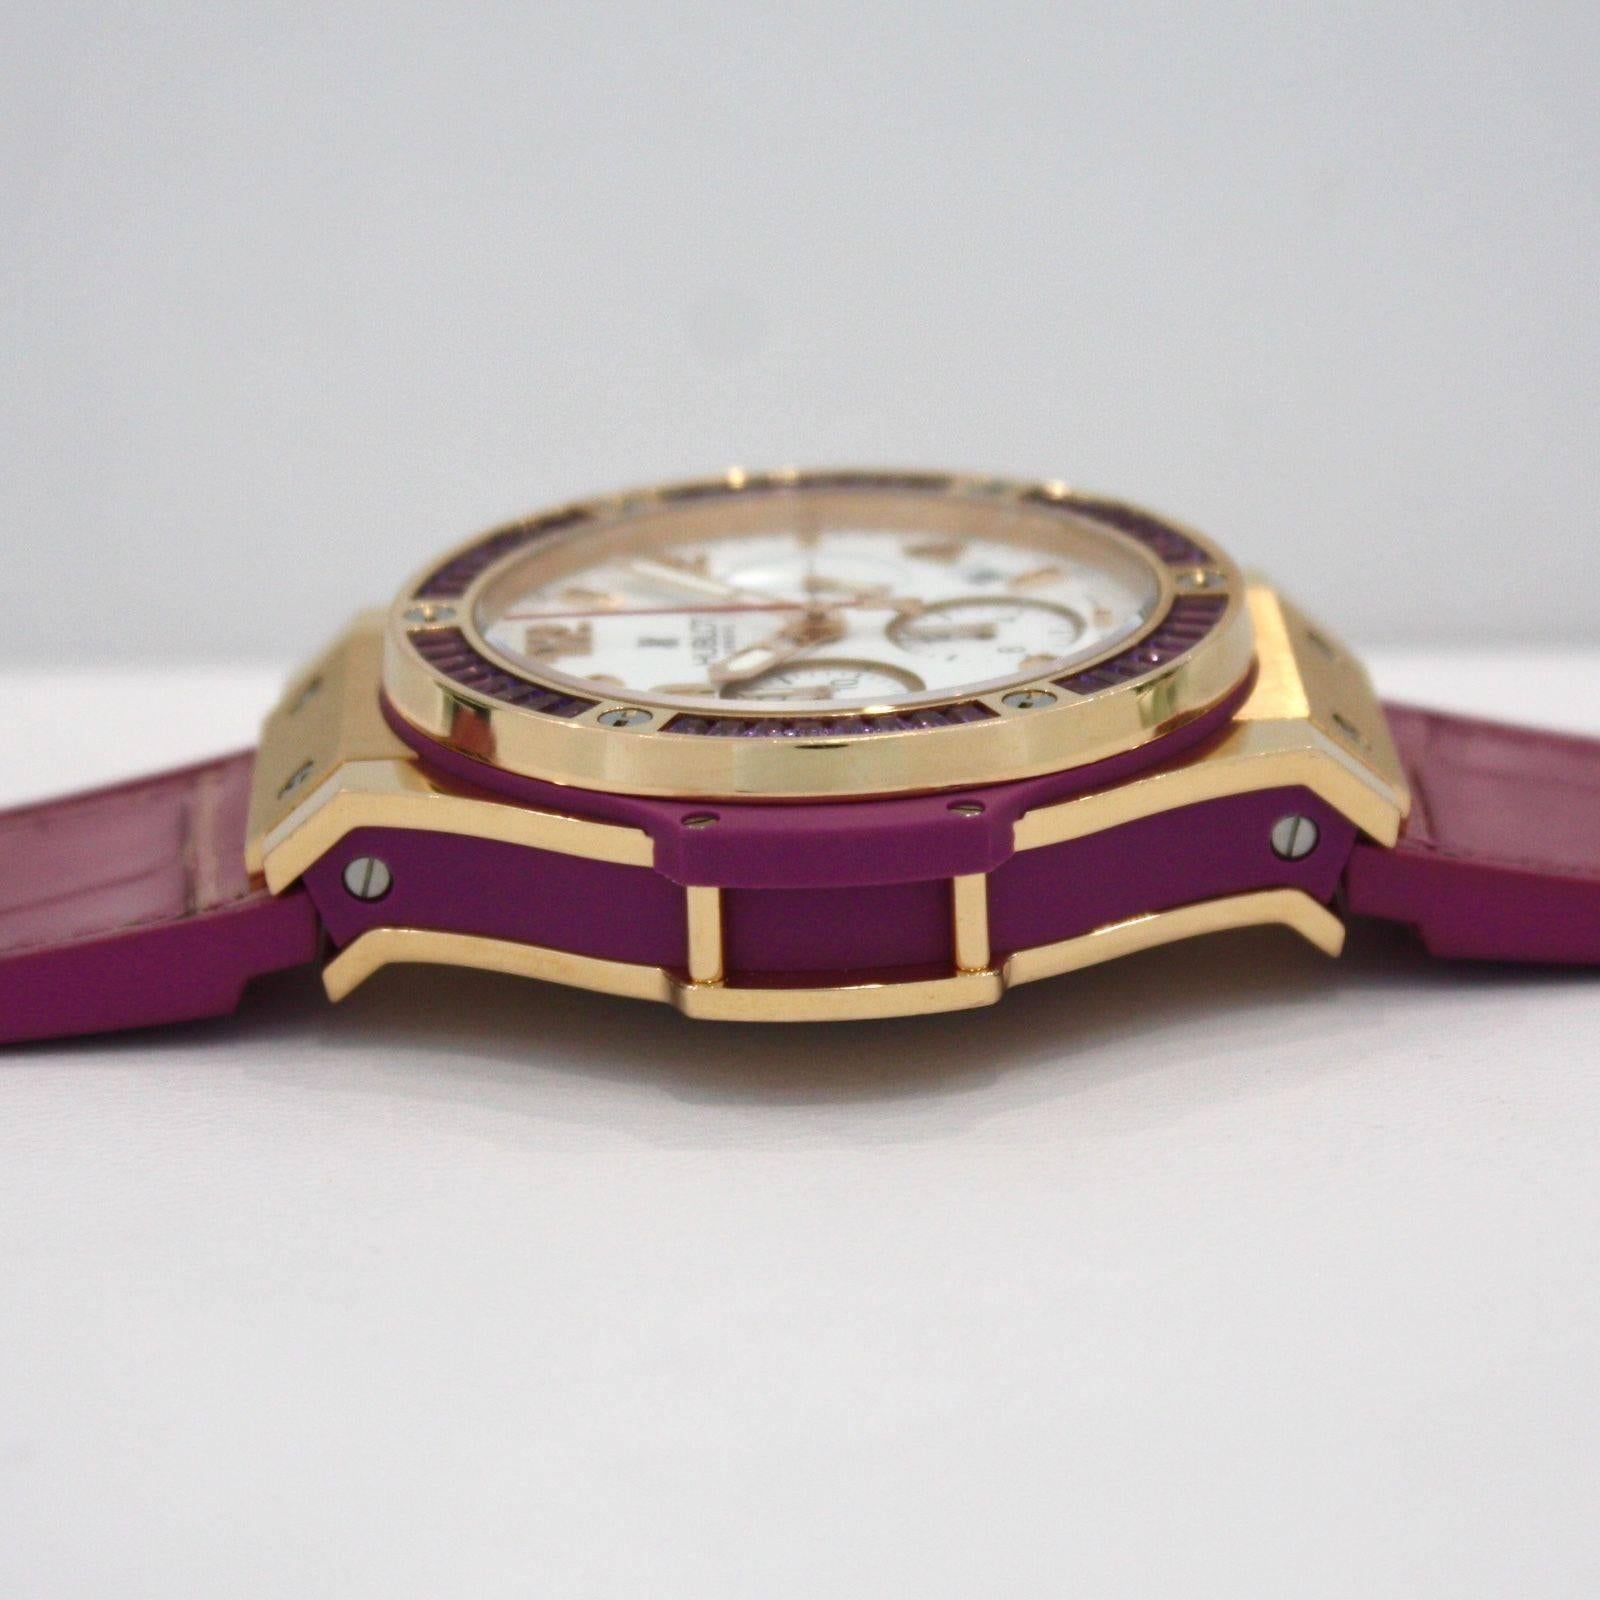 Hublot Rose Gold Purple Amethyst Big Bang Tutti Frutti Automatic Wristwatch 4